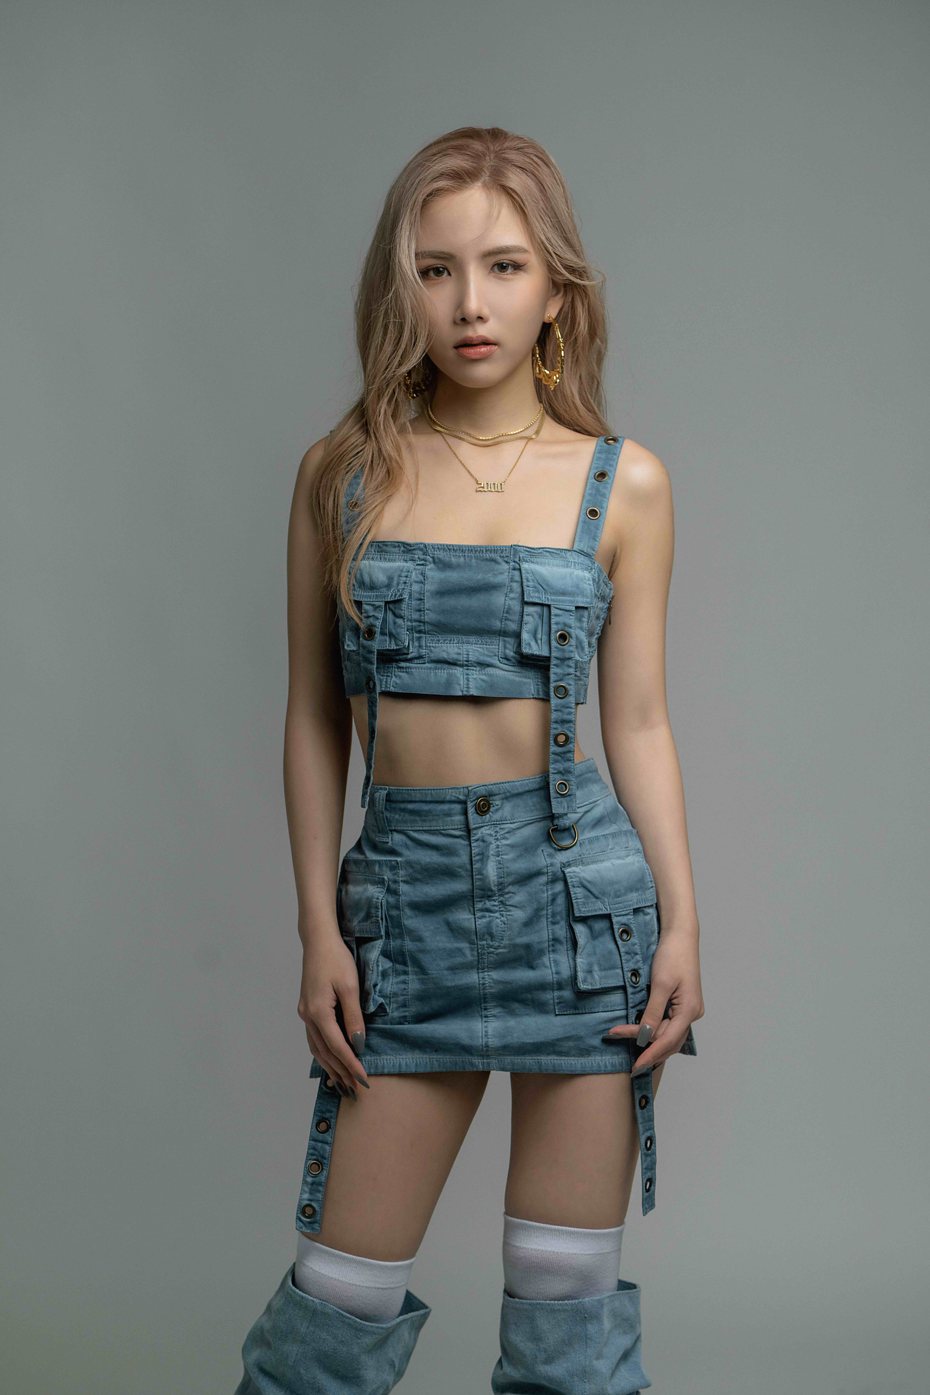 华语乐坛新星「R&B小辣椒」Jocelyn 9.4.0 新歌「Woody」写下面对感情中害怕被抛下的不安。图／华风数位提供